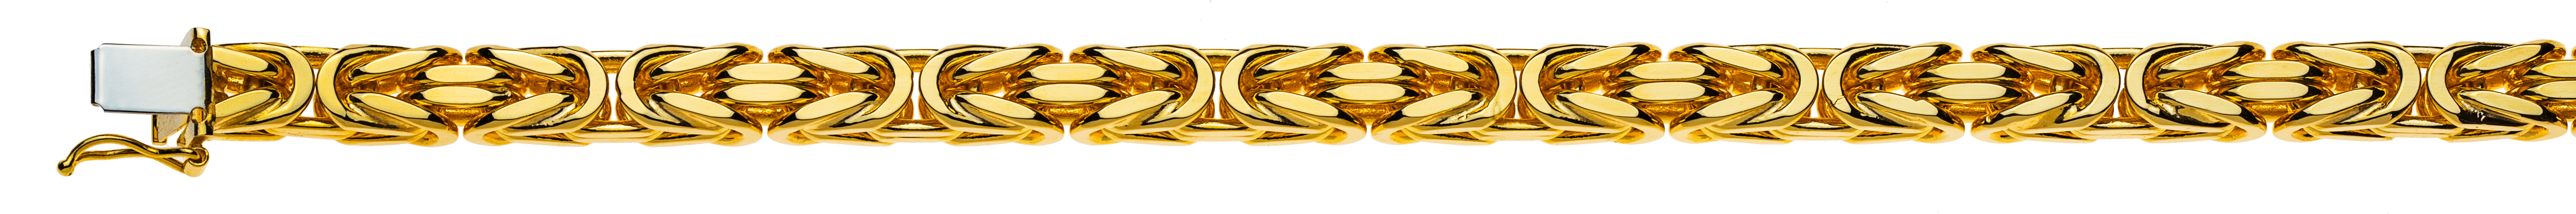 AURONOS Prestige Halskette Gelbgold 18K Königskette 60cm 6mm